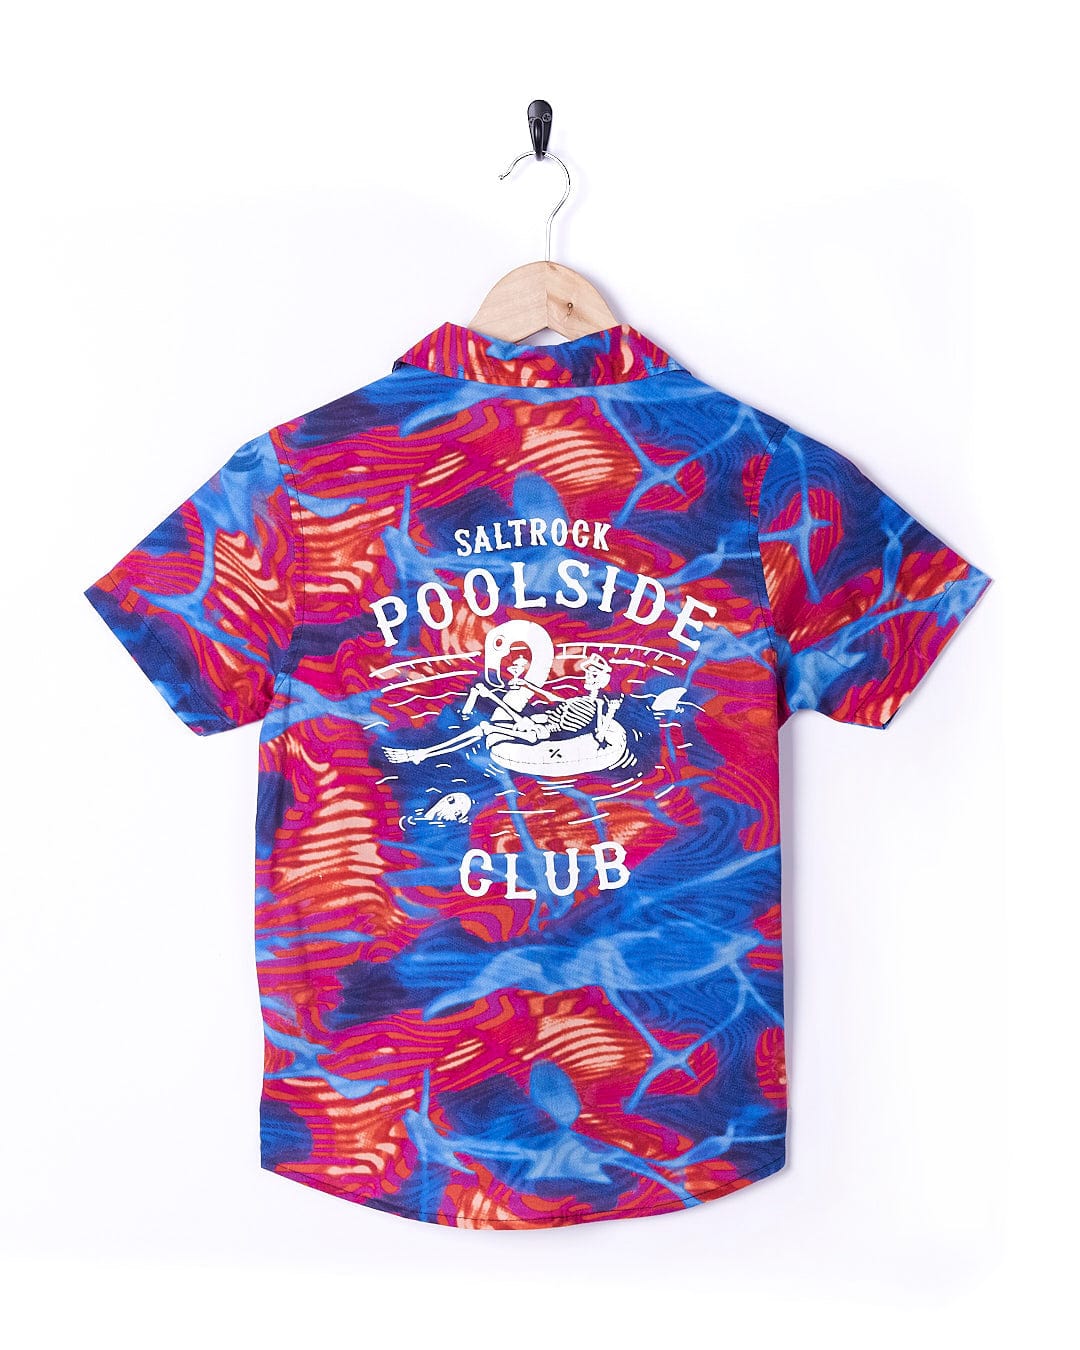 Poolside - Kids All Over Print Short Sleeve Shirt - Multi